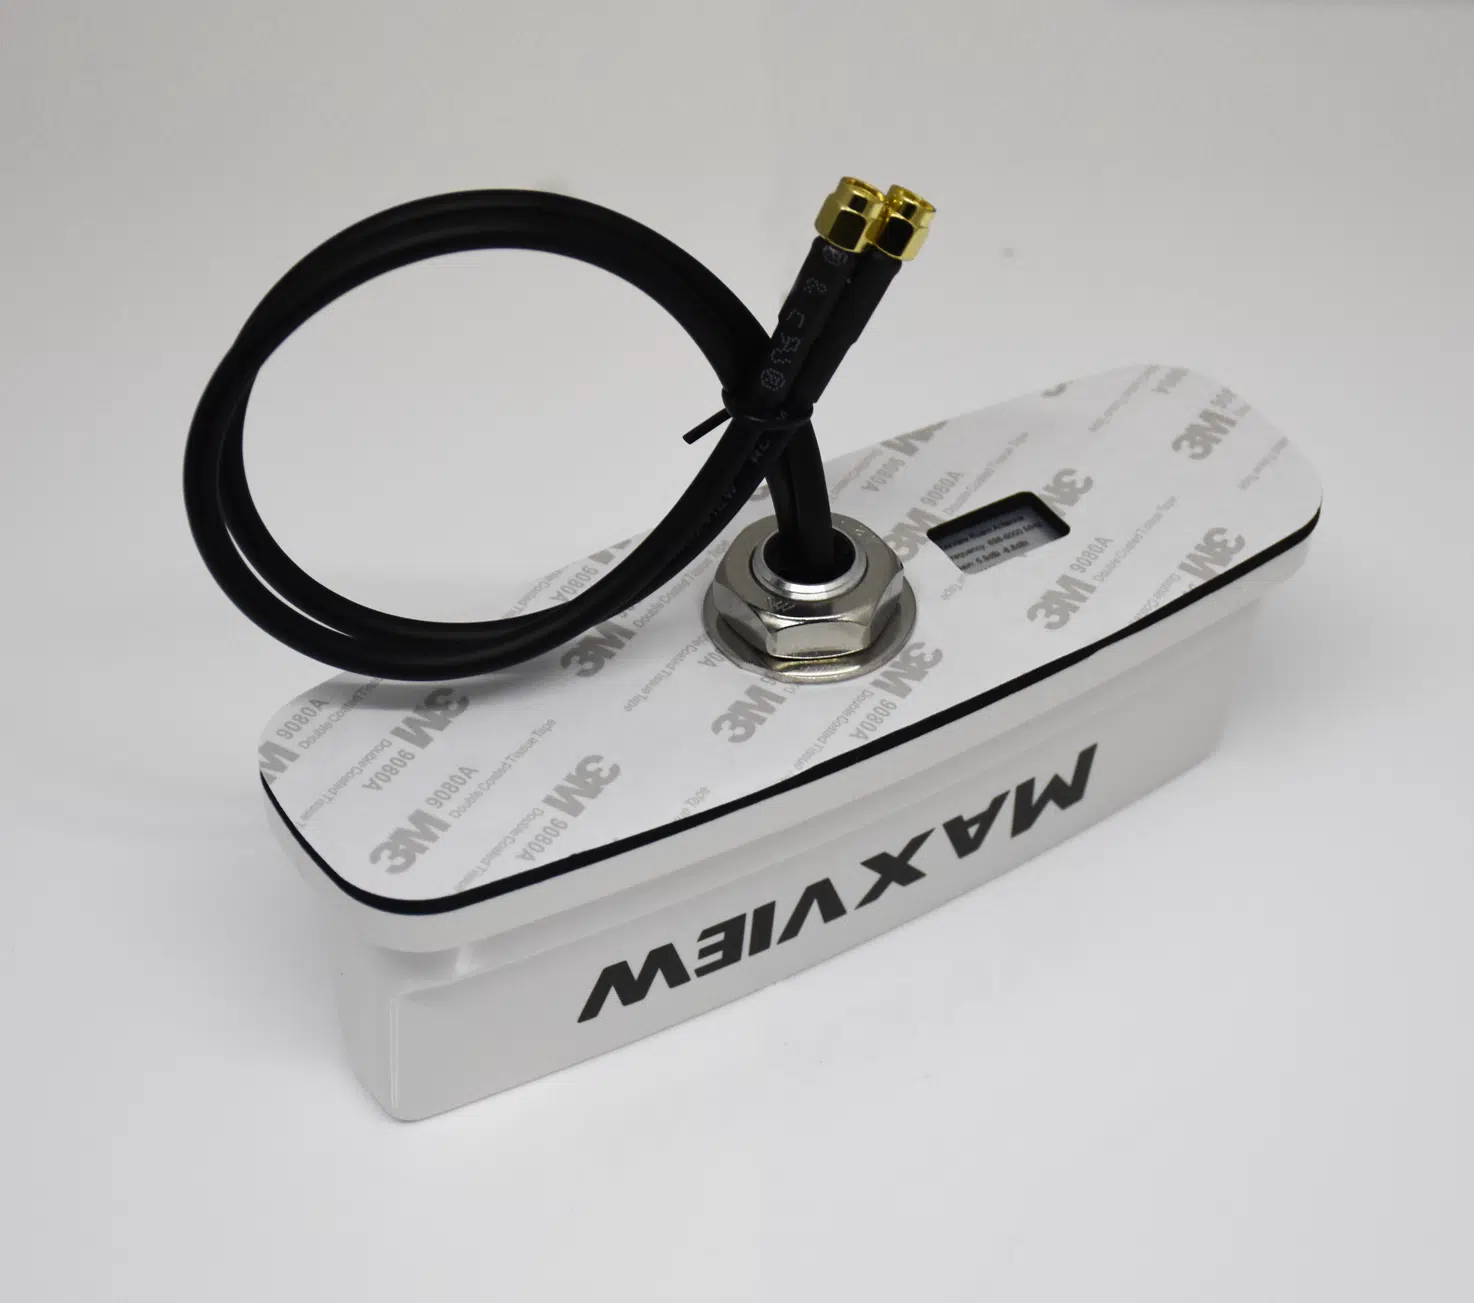 Maxview Roam X - mobiele 5G ready WiFi oplossing - Satelliet winkel  CardWriter